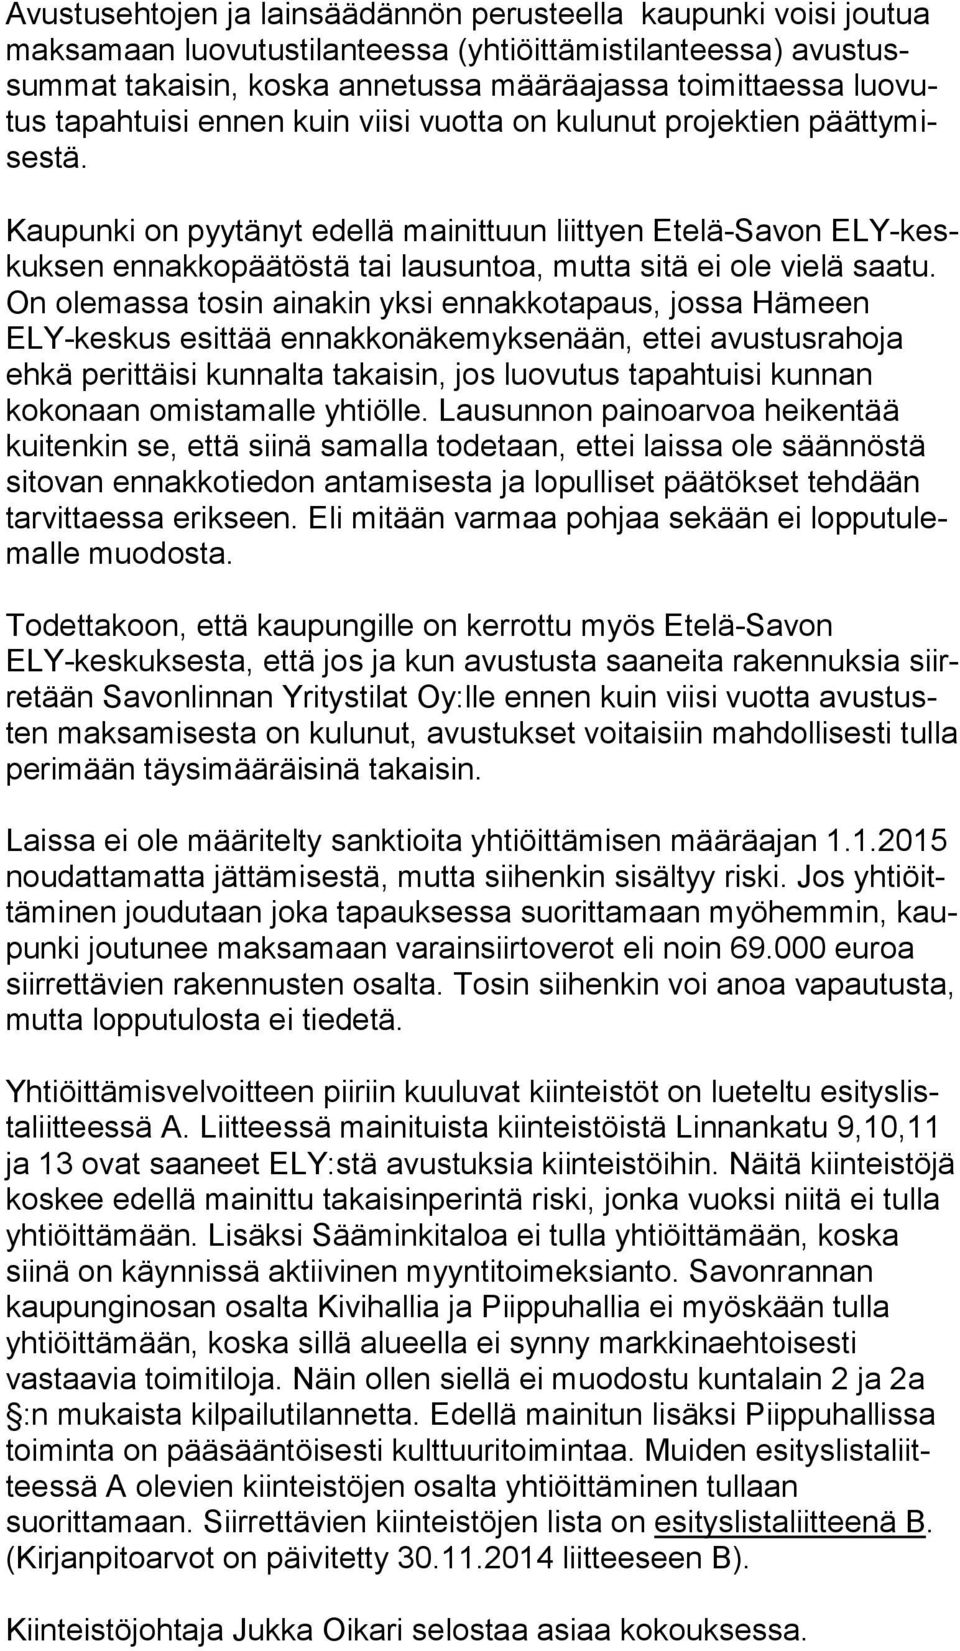 Kaupunki on pyytänyt edellä mainittuun liittyen Etelä-Savon ELY-keskuk sen ennakkopäätöstä tai lausuntoa, mutta sitä ei ole vie lä saatu.